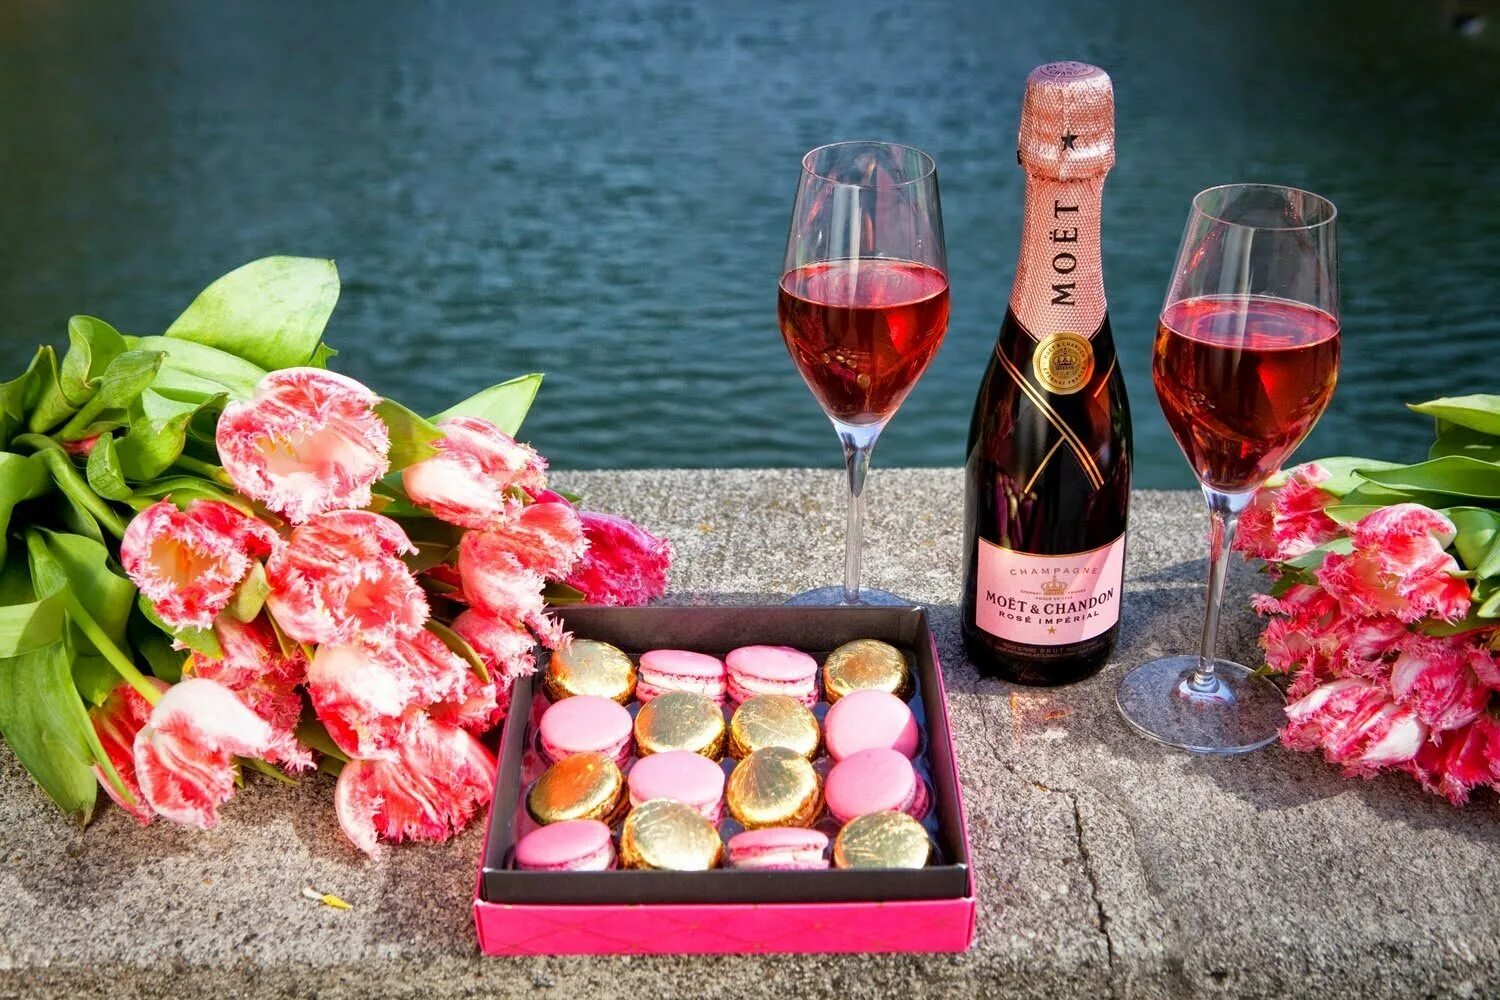 Начало юбилея как начать вечер. Цветы и шампанское. Цветы шампанское конфеты. Торт шампанское цветы. Цветы вино конфеты.